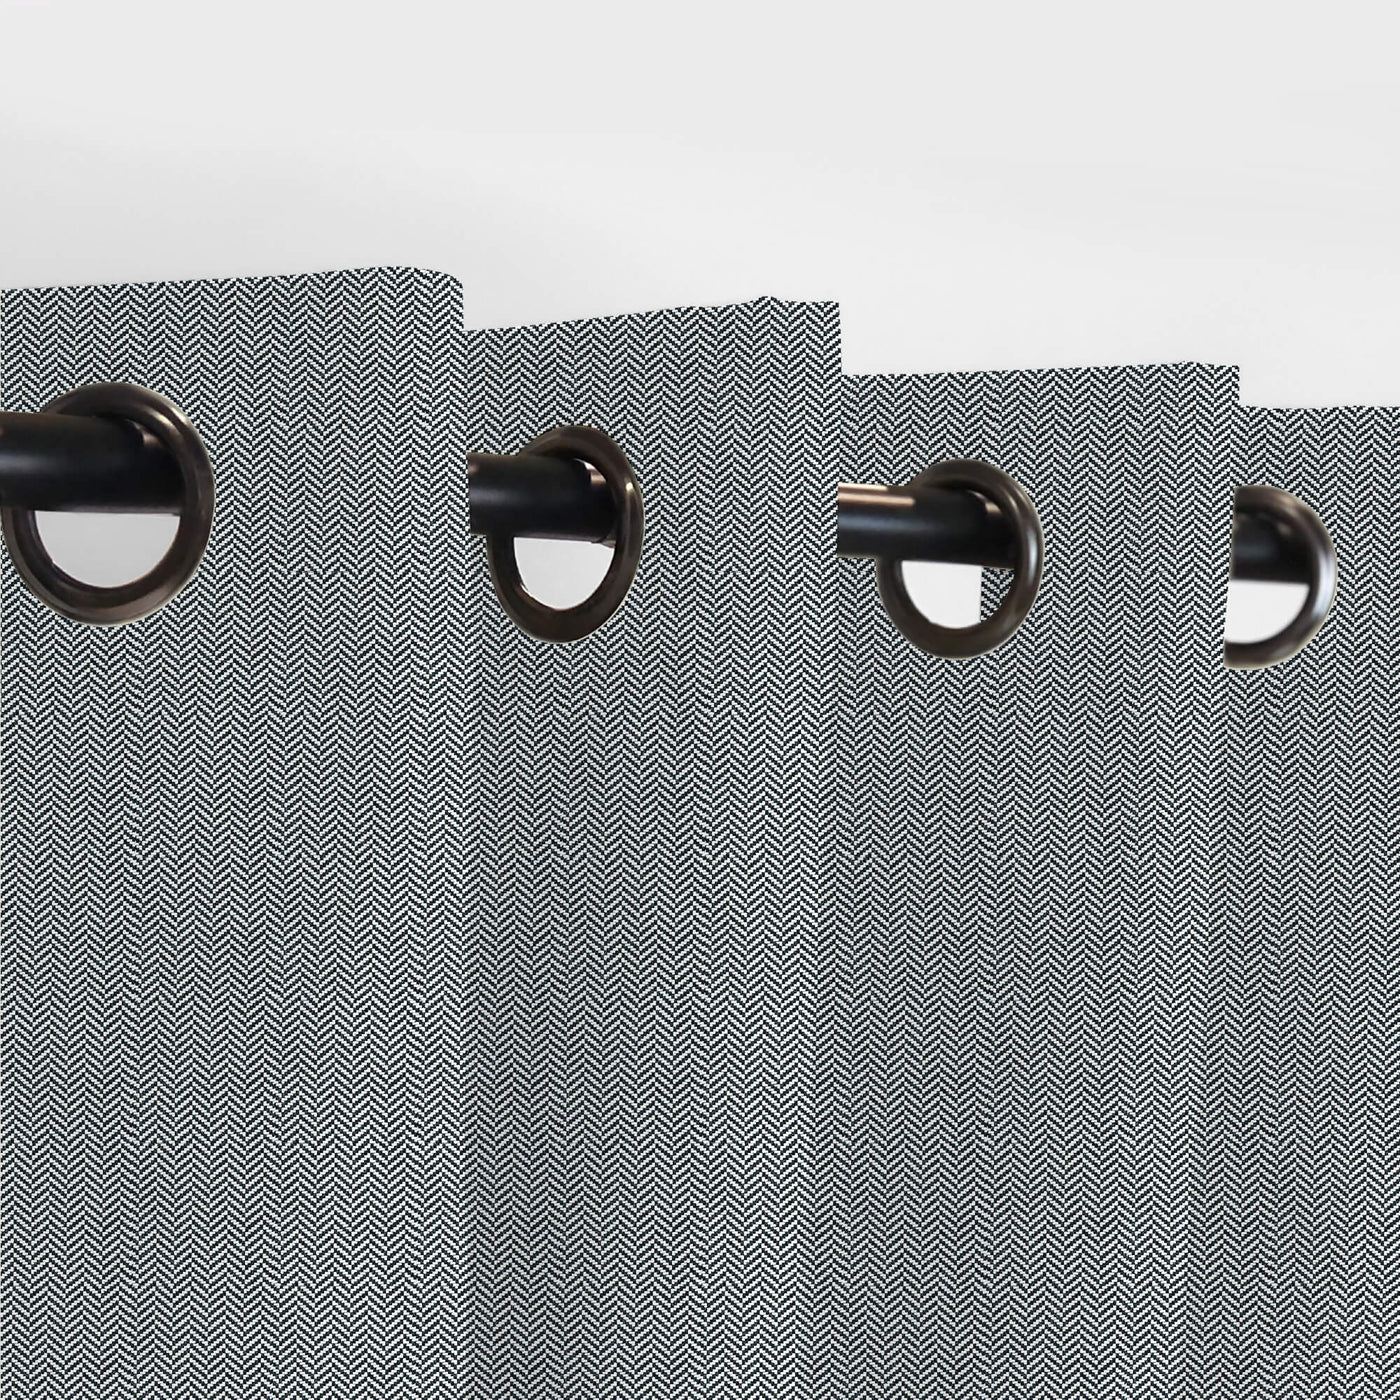 PENGI Outdoor Curtains Waterproof- Herringbone Black